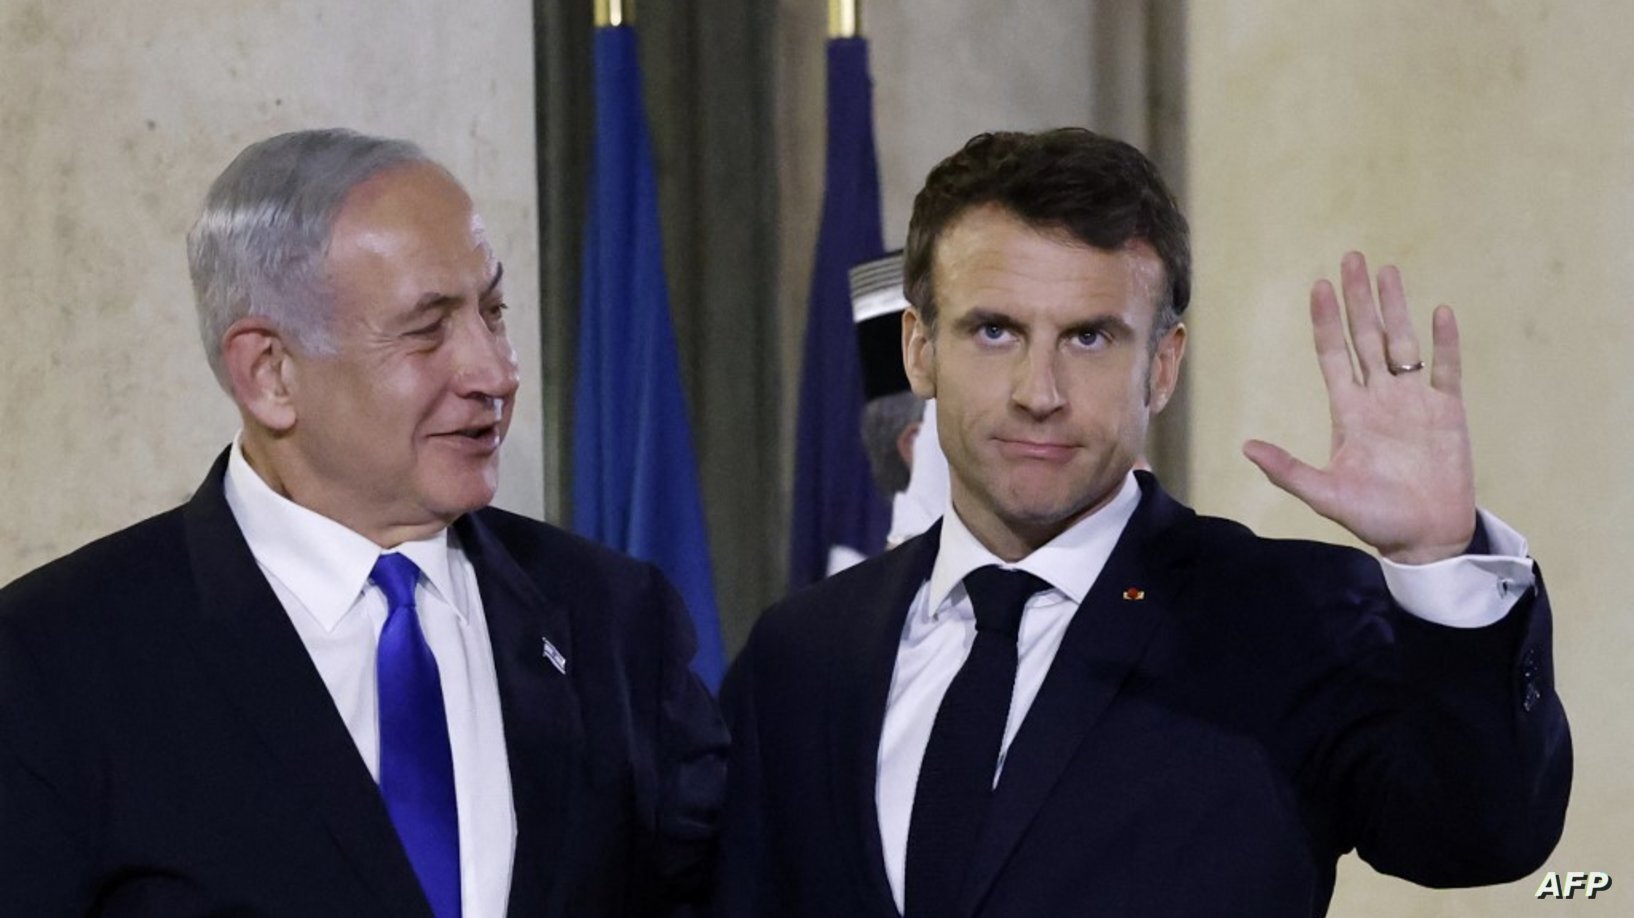 نتانیاهو: جلسه عالی با مکرون داشتم / الان درباره ایران تنها نیستیم؛ هم آمریکا هم اروپا